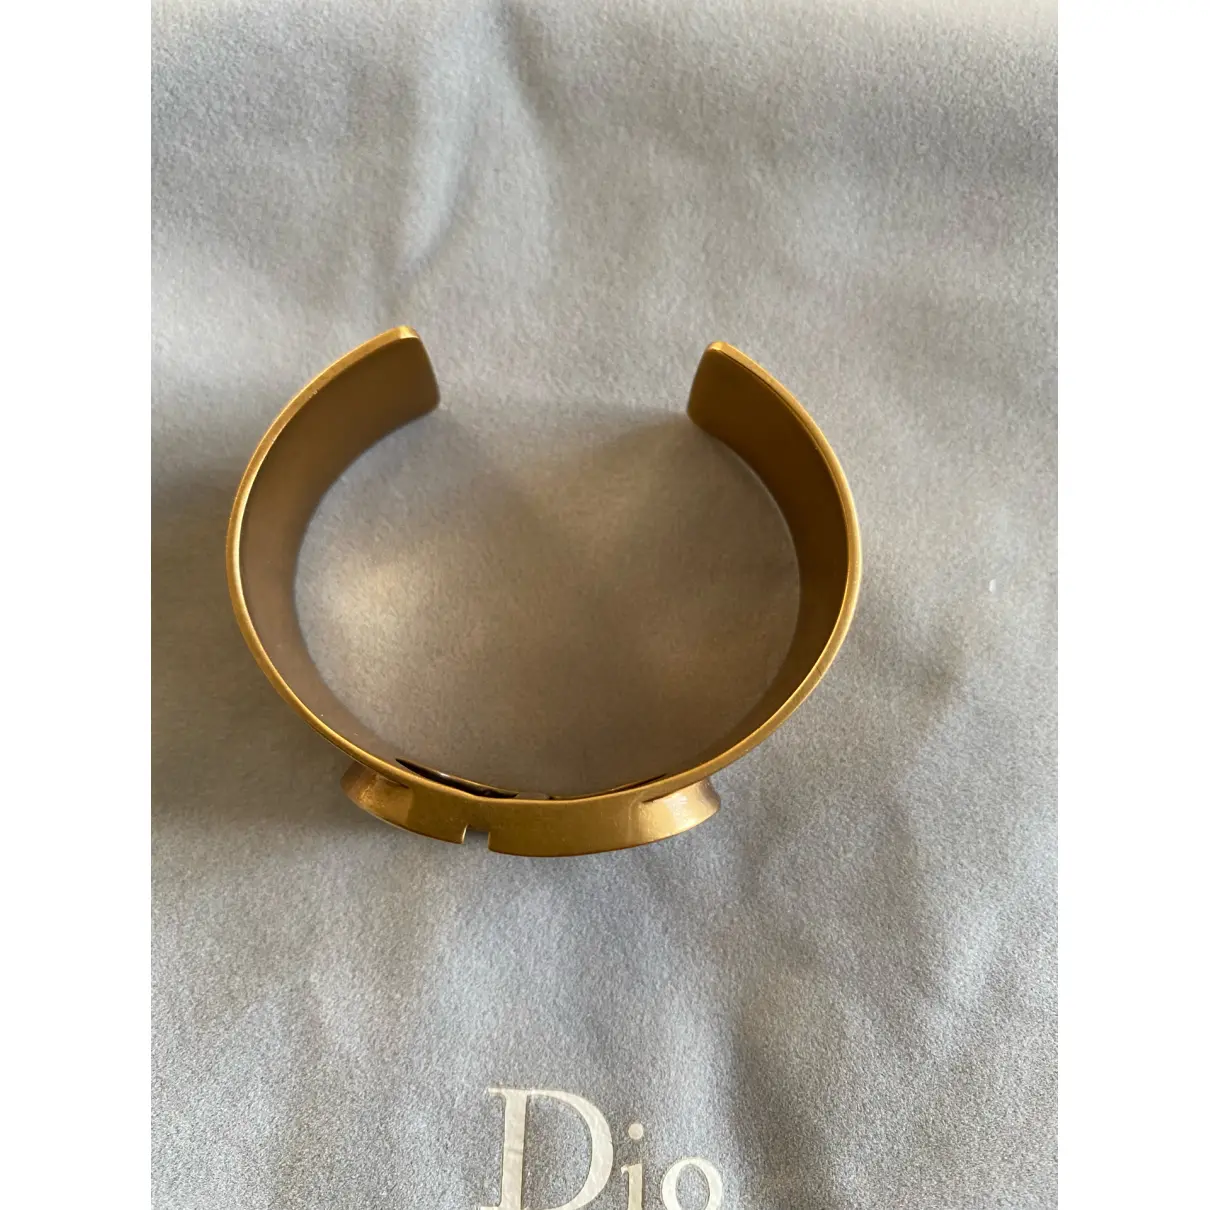 Bracelet Dior